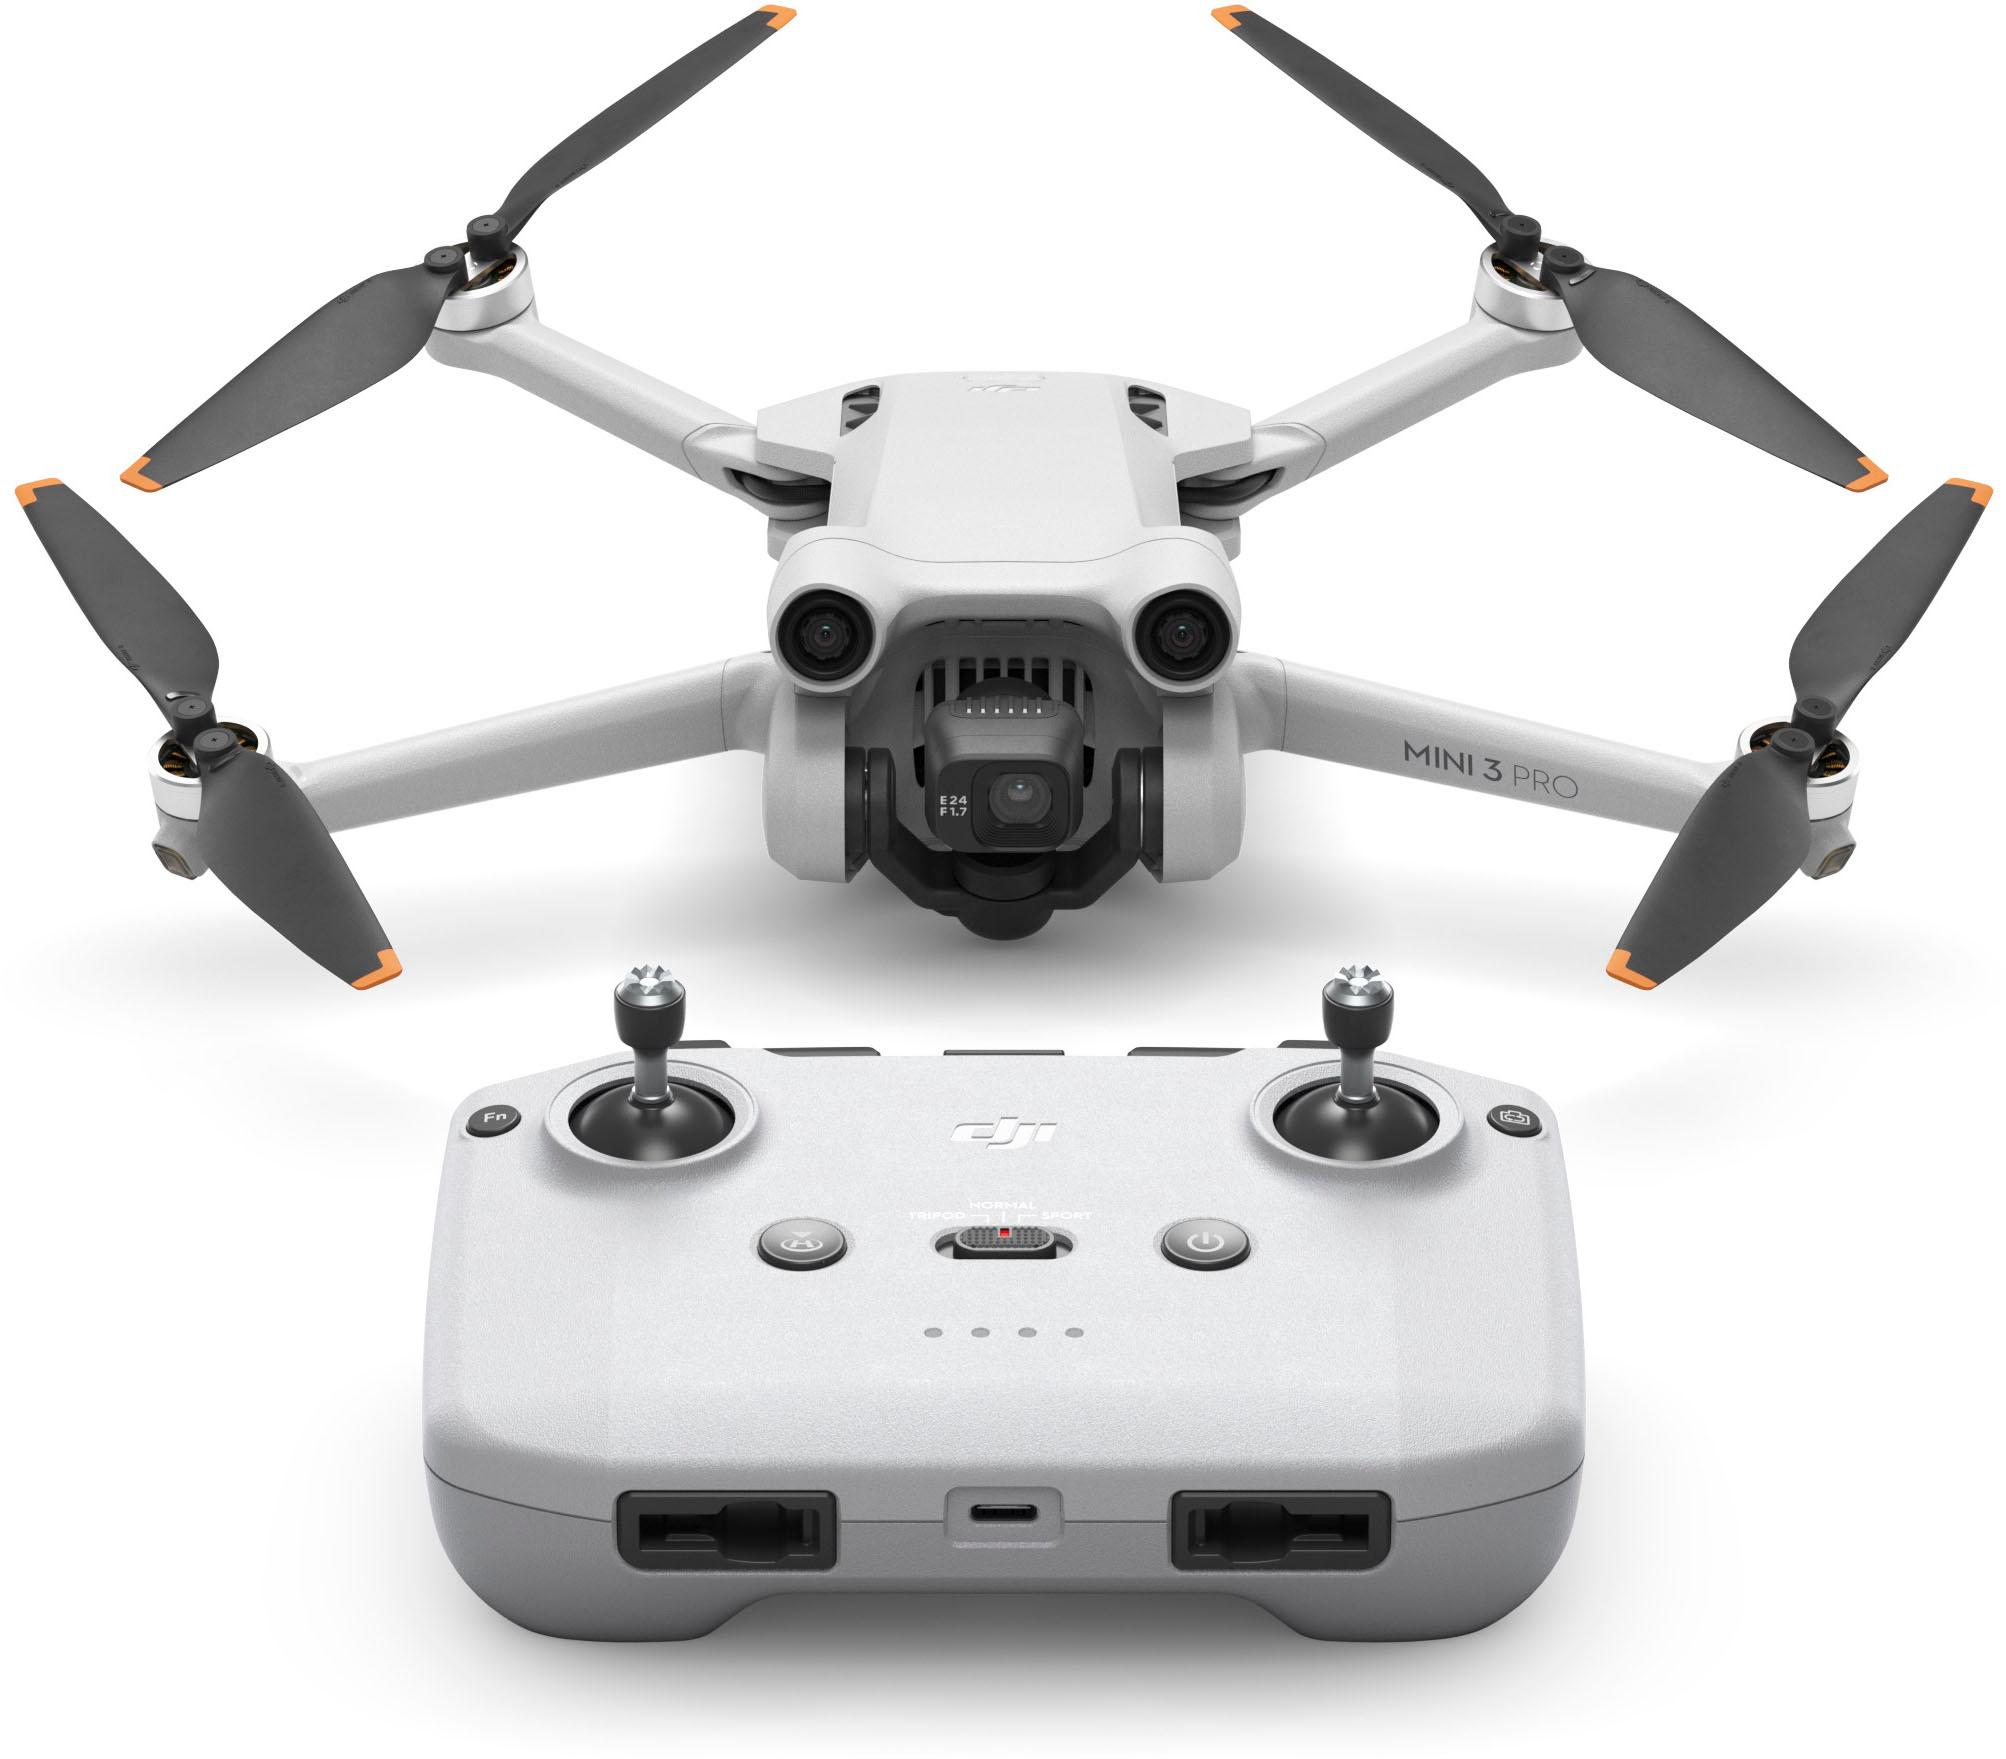 DJI Mini SE: The Newest DJI Micro Drone for Beginners